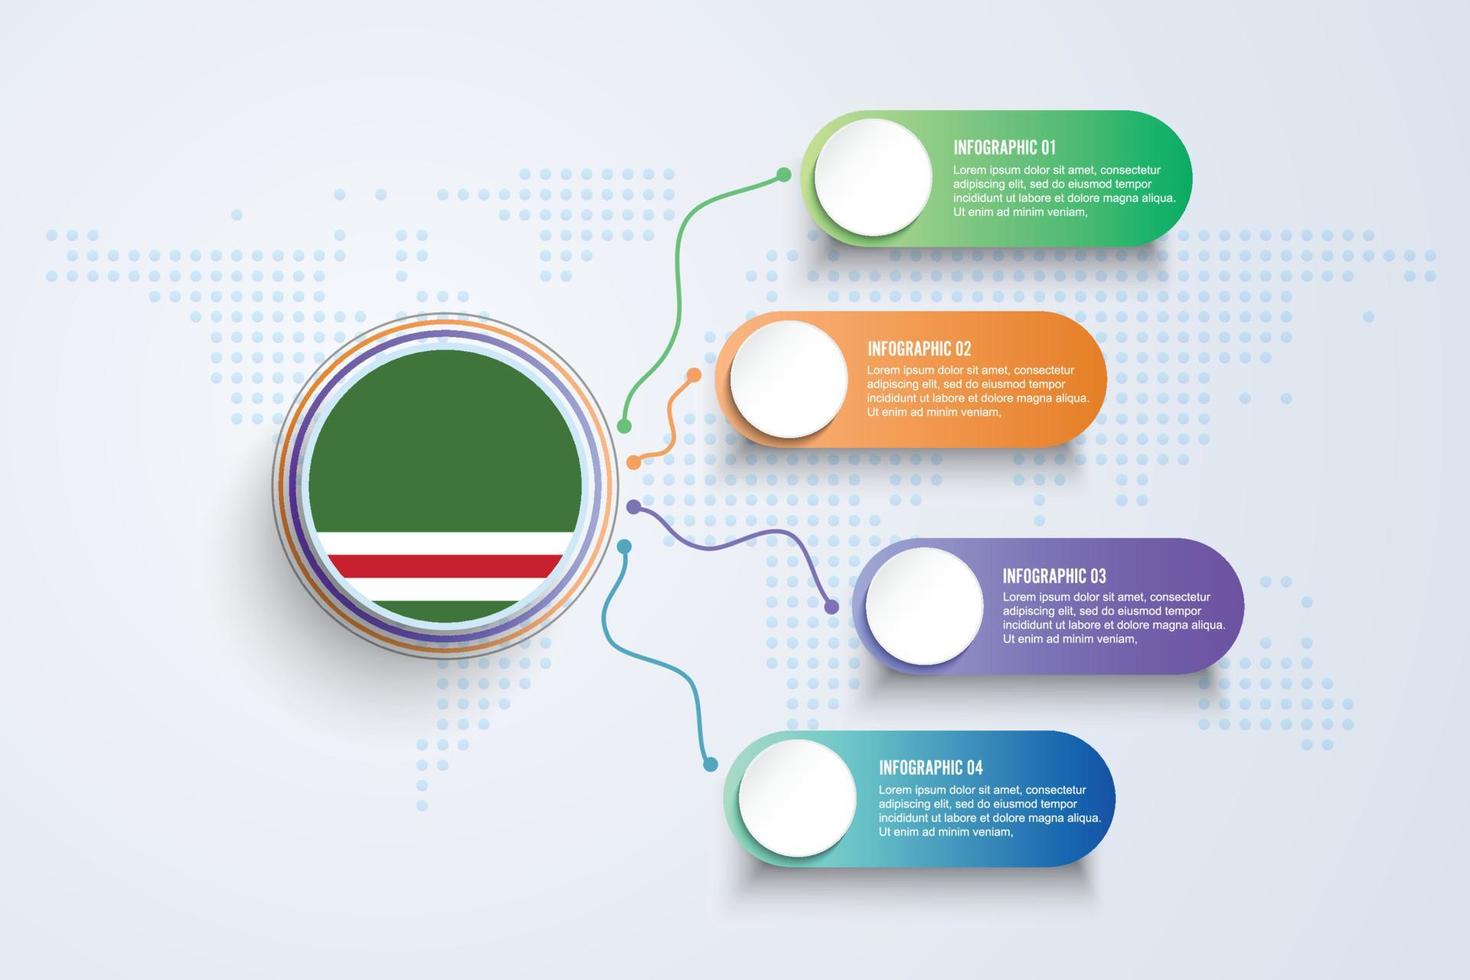 vlag van de Tsjetsjeense Republiek lchkeria met infographic ontwerp geïsoleerd op de wereldkaart van de stip vector